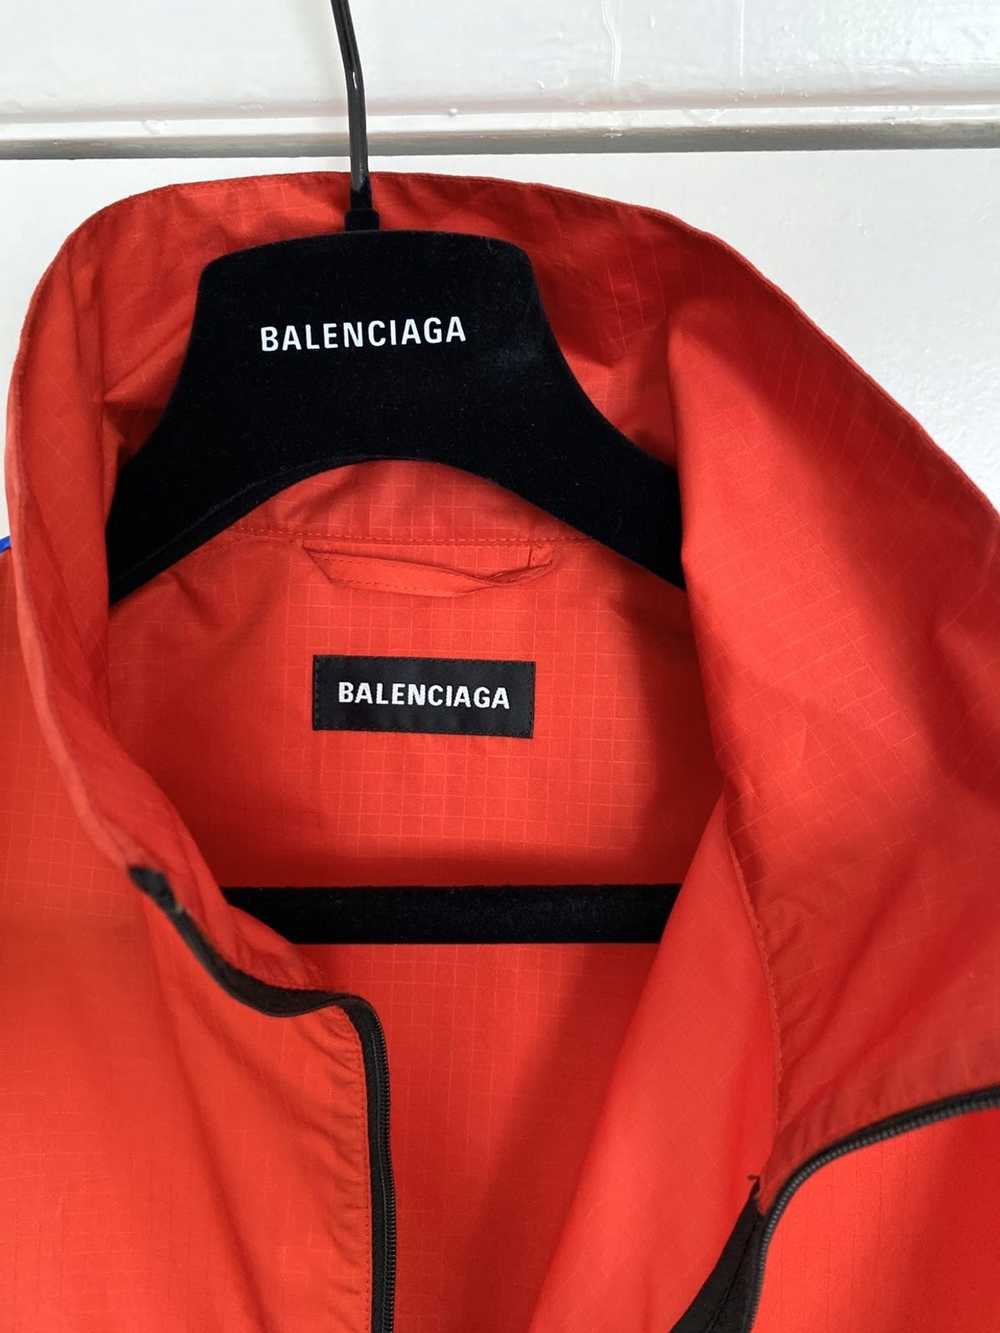 Balenciaga Balenciaga Colorblock Track Jacket 46 - image 3